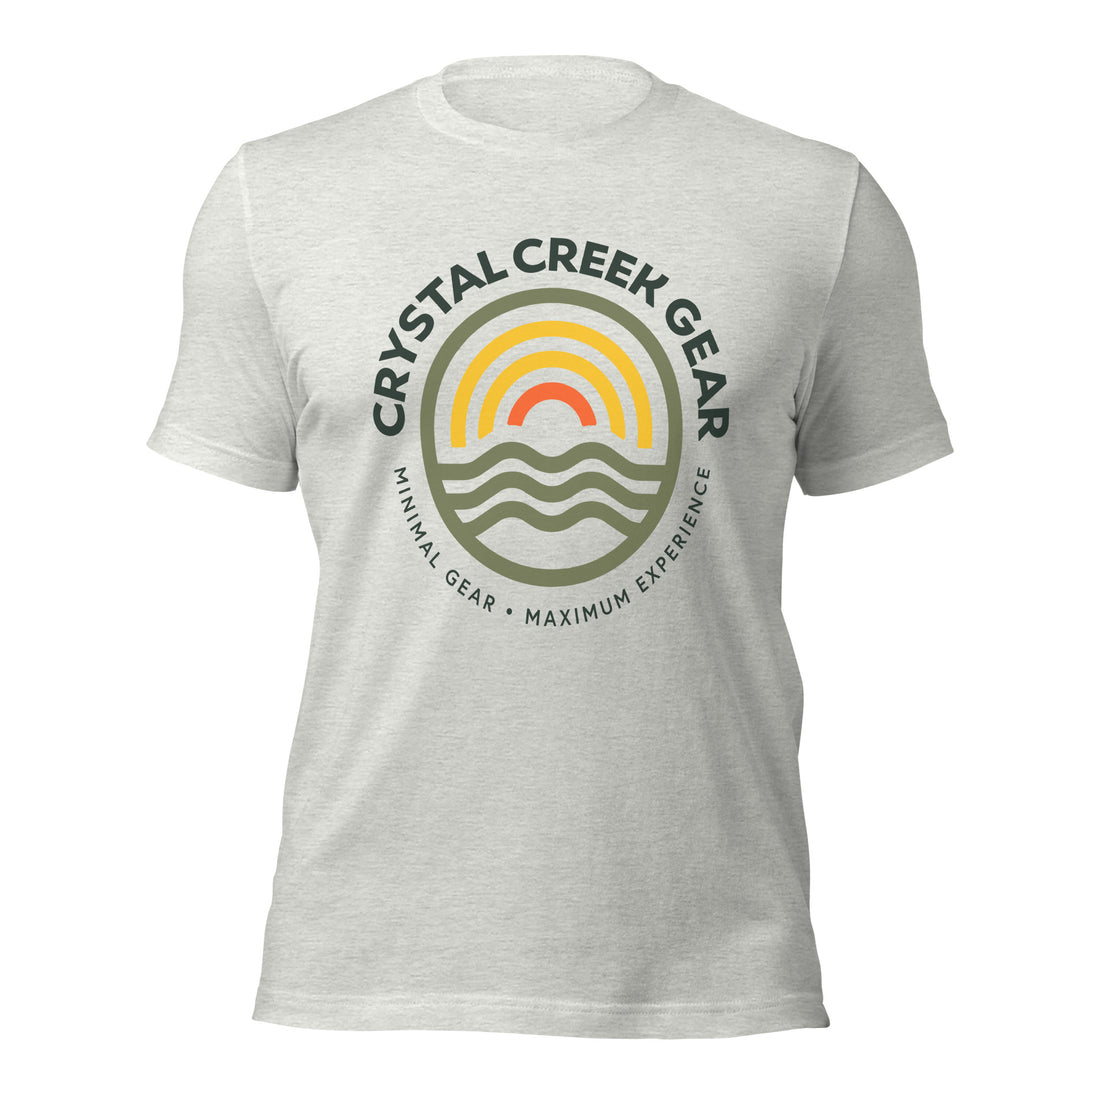 Crystal Creek Gear Fog Green T-Shirt